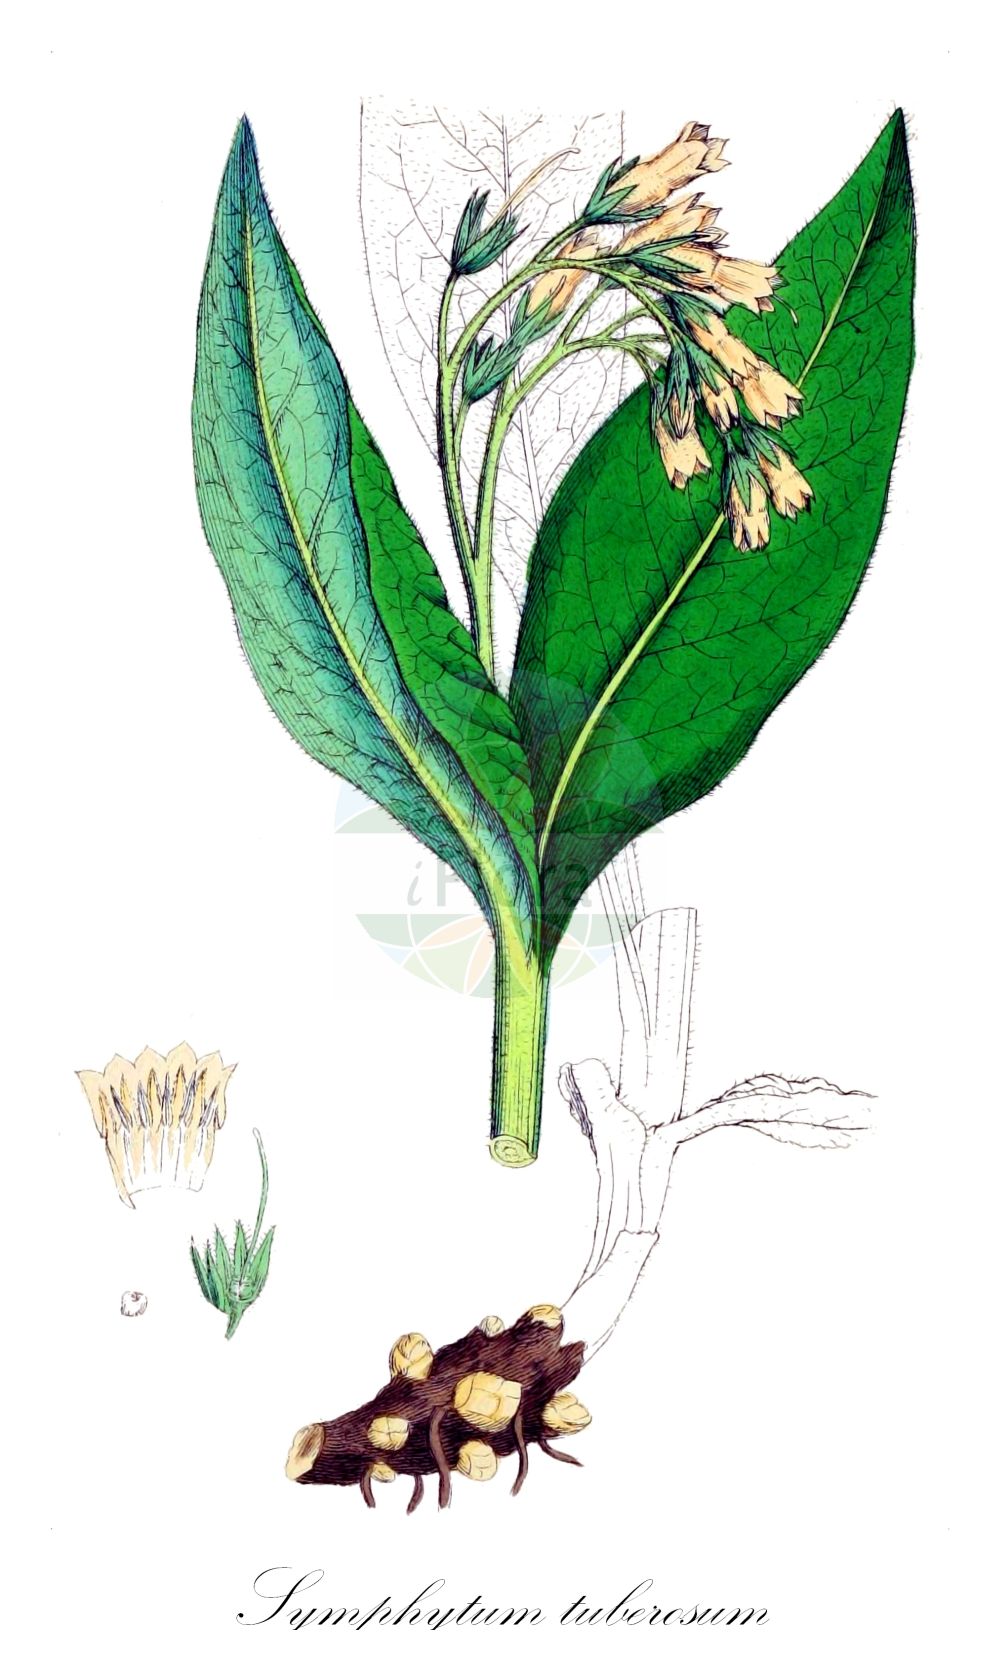 Historische Abbildung von Symphytum tuberosum (Knollen-Beinwell - Tuberous Comfrey). Das Bild zeigt Blatt, Bluete, Frucht und Same. ---- Historical Drawing of Symphytum tuberosum (Knollen-Beinwell - Tuberous Comfrey). The image is showing leaf, flower, fruit and seed.(Symphytum tuberosum,Knollen-Beinwell,Tuberous Comfrey,Symphytum tuberosum,Knollen-Beinwell,Knoten-Beinwell,Knotige Wallwurz,Tuberous Comfrey,Symphytum,Beinwell,Comfrey,Boraginaceae,Raublattgewächse,Forget-me-Not family,Blatt,Bluete,Frucht,Same,leaf,flower,fruit,seed,Sowerby (1790-1813))